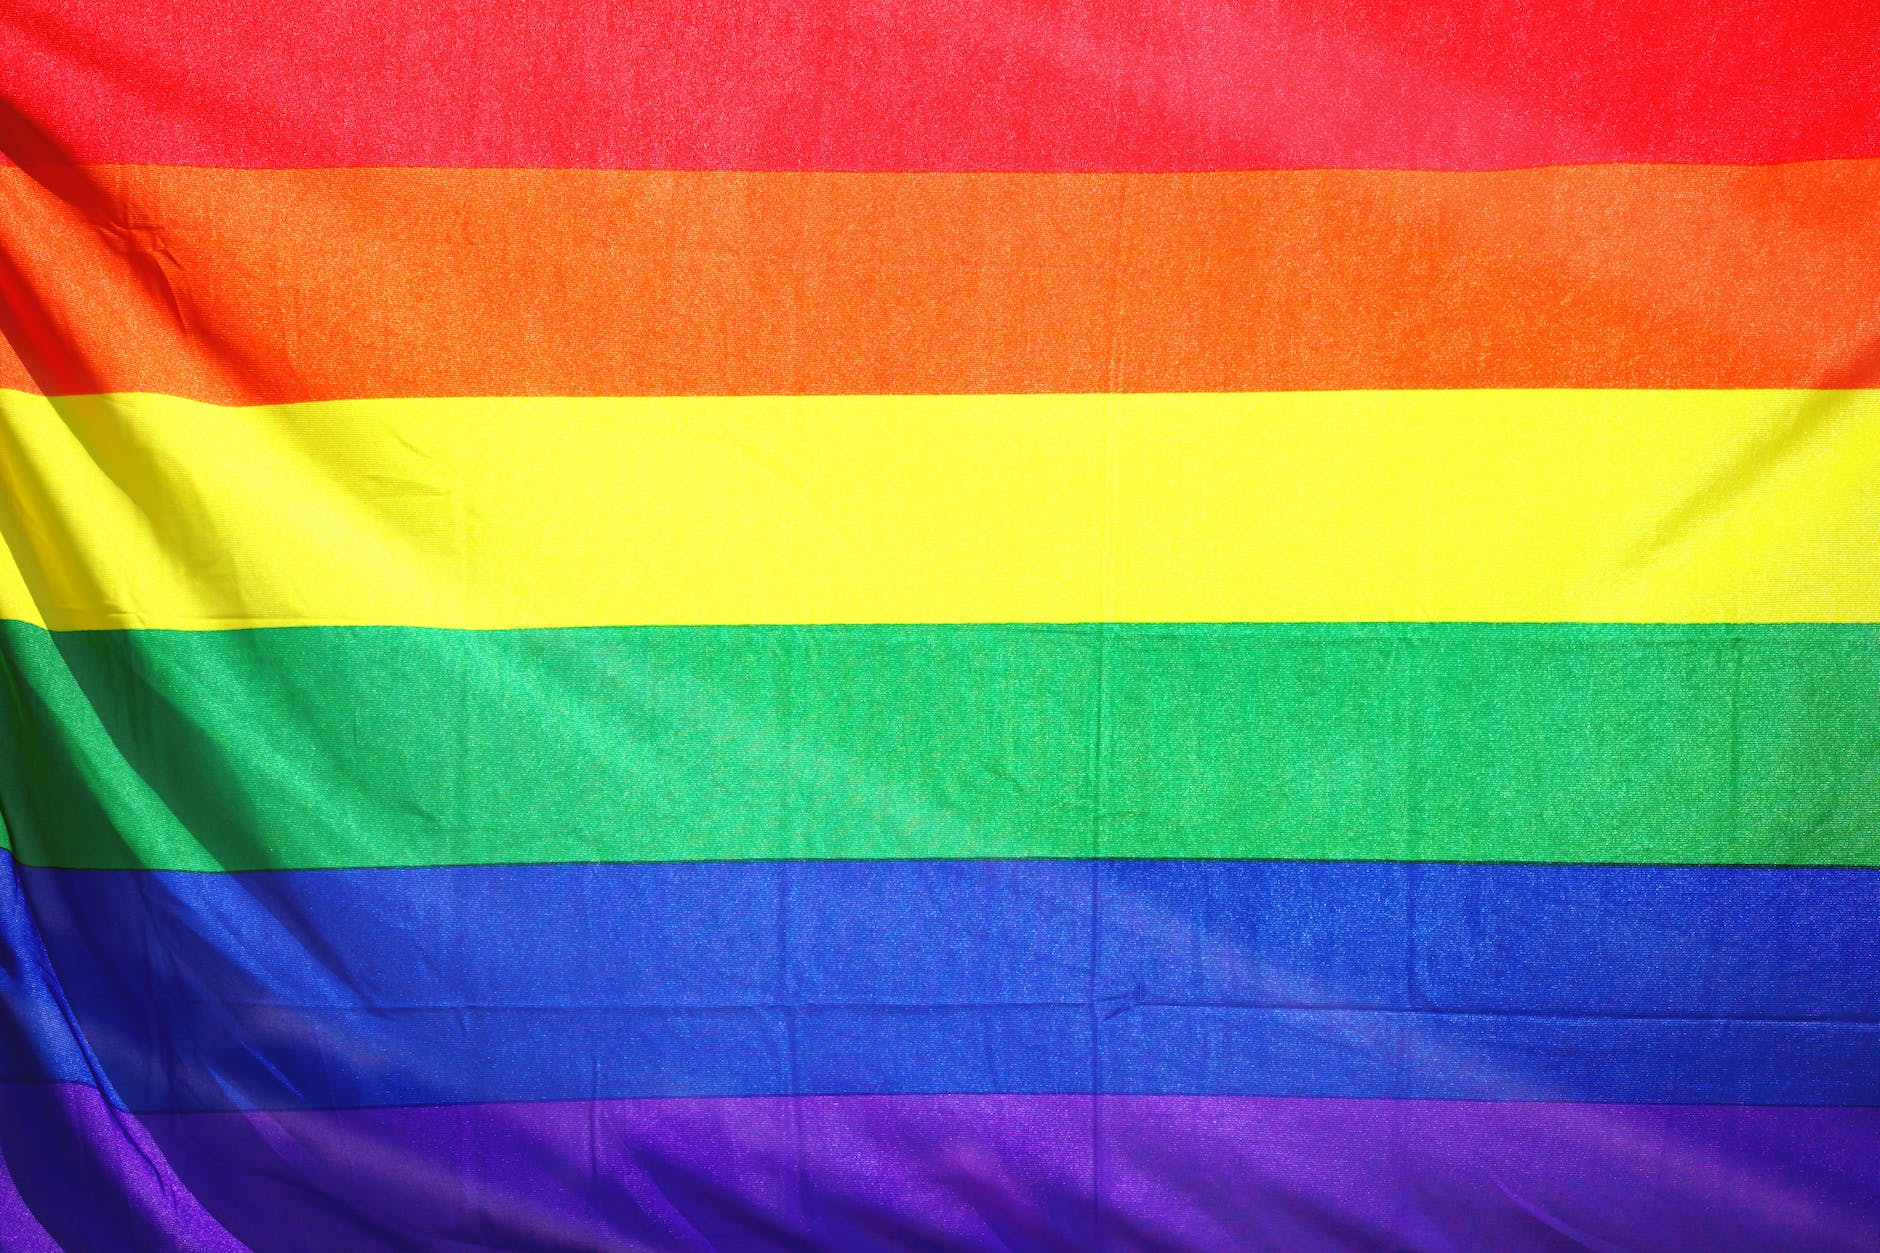 Exhortan a garantizar presupuestos para atender derechos de comunidad LGBT+